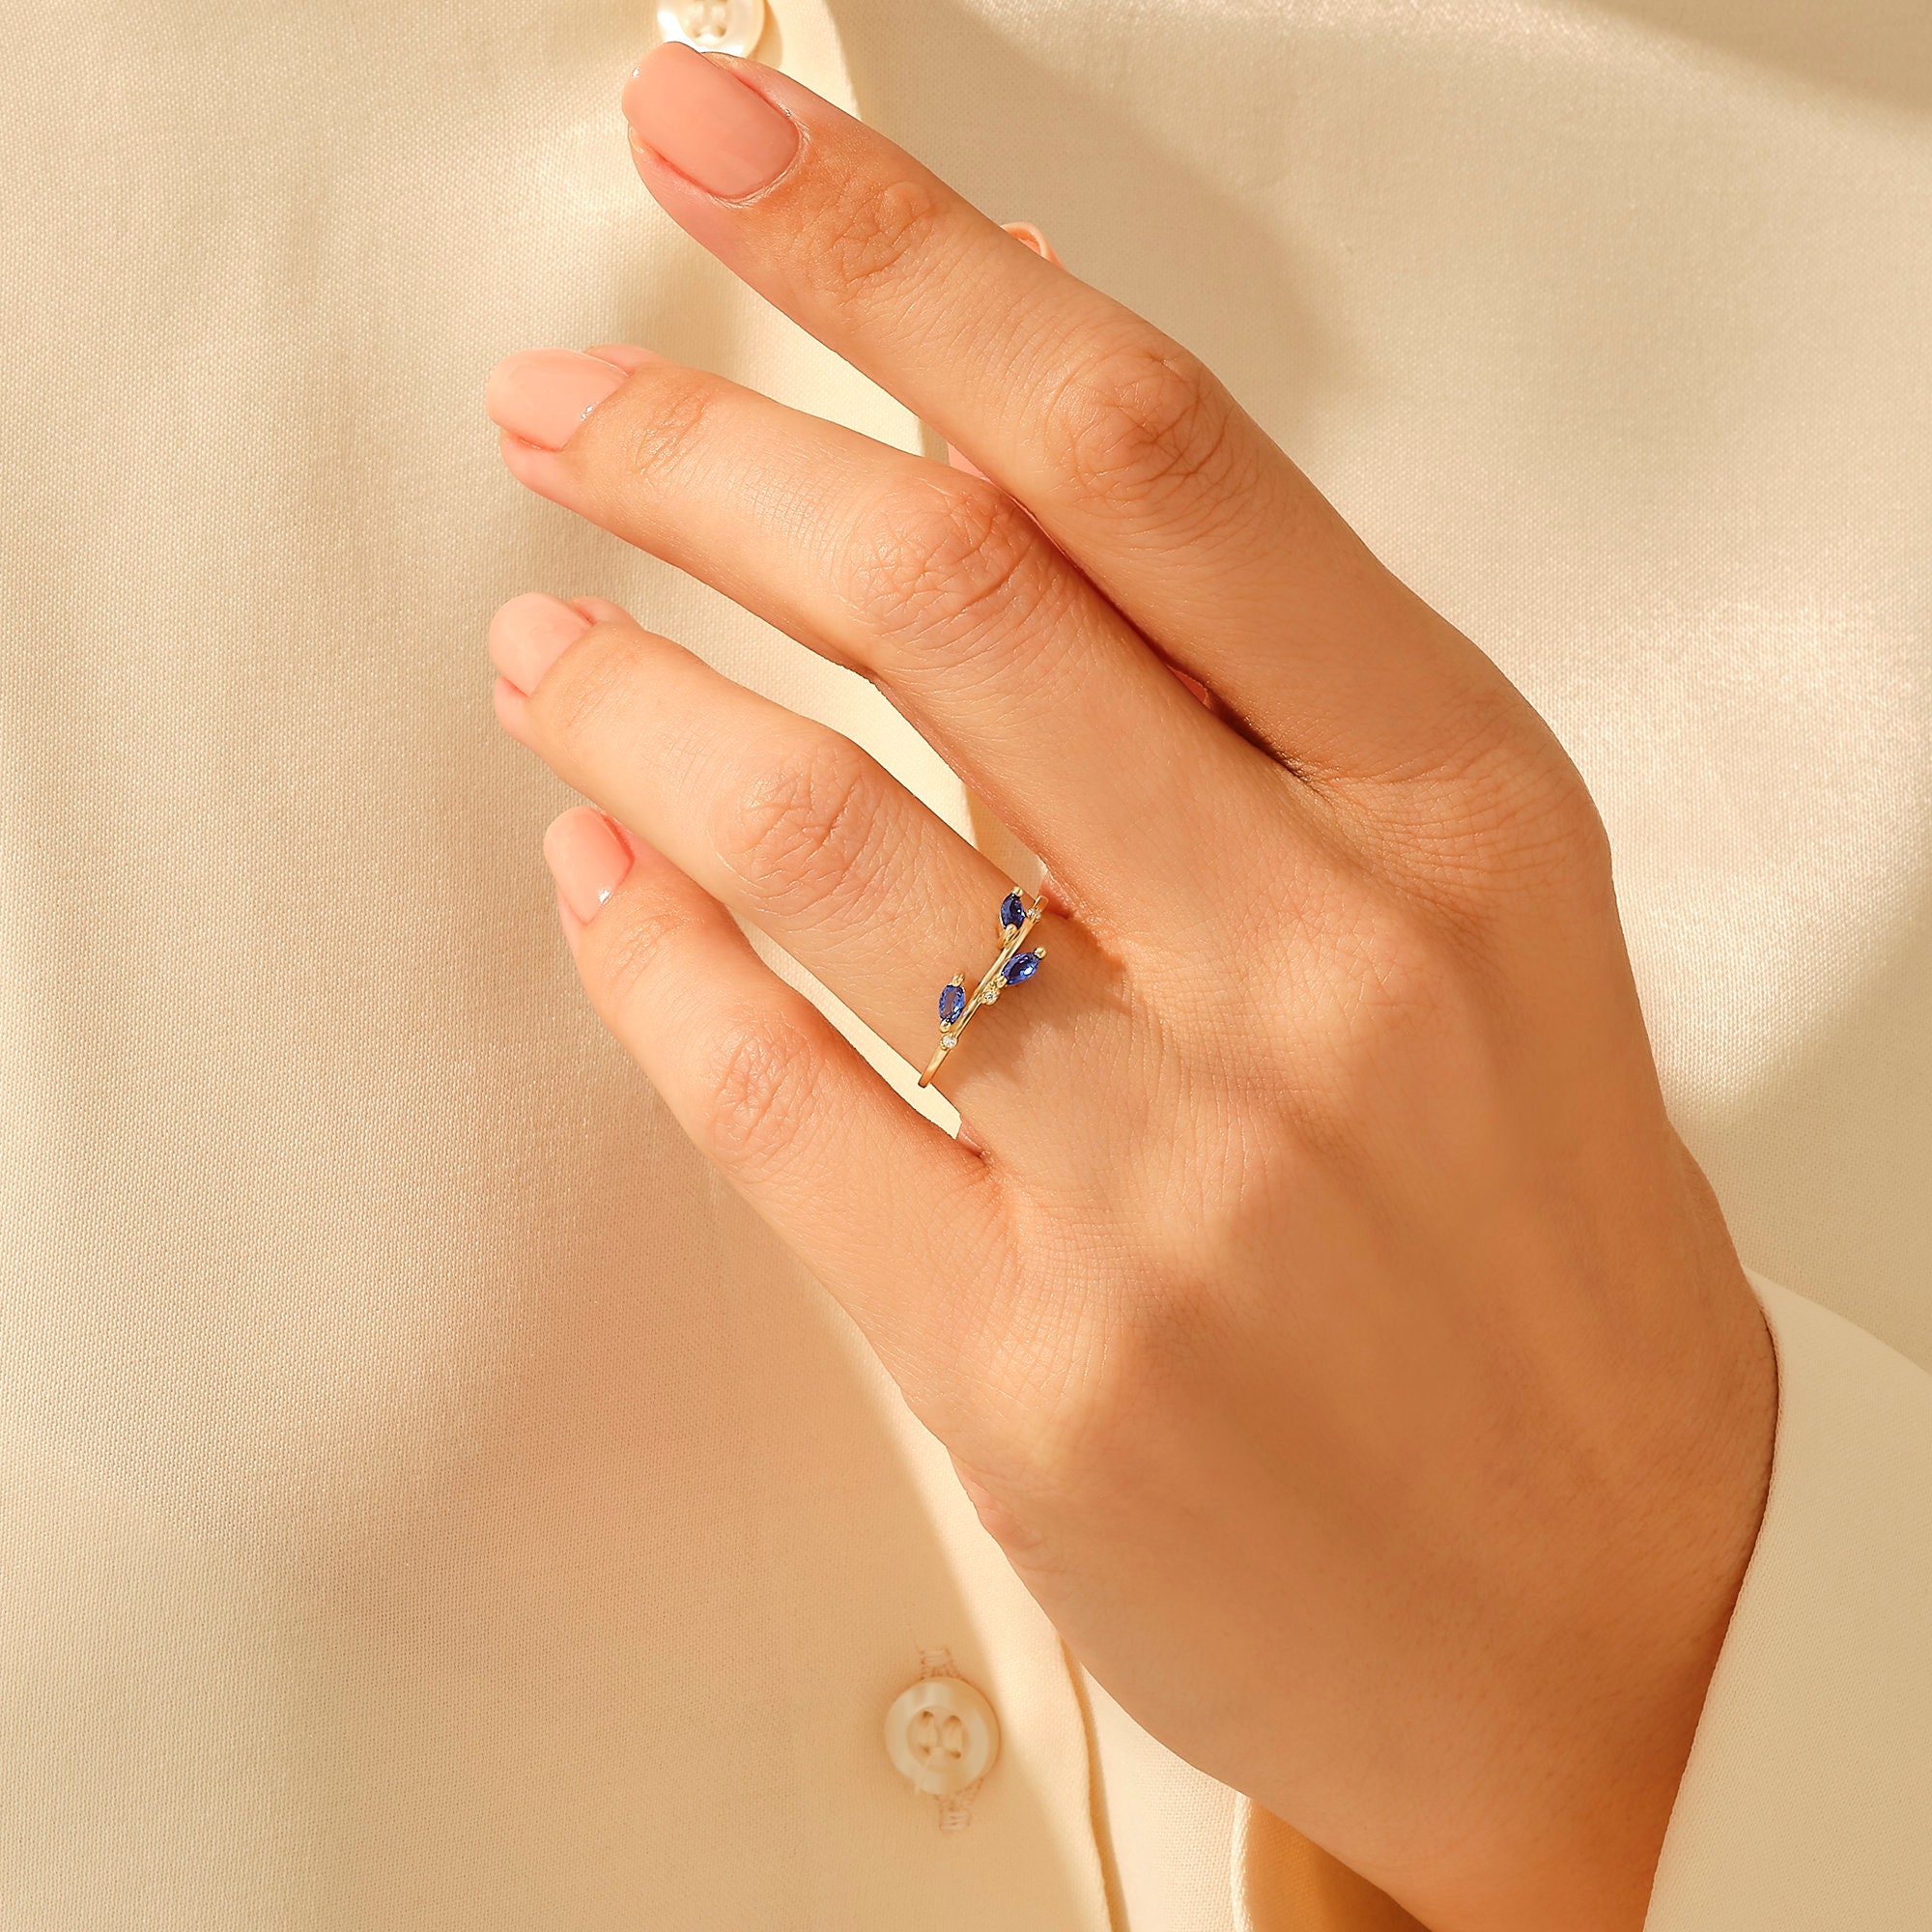 anillo apilable de enredadera de piedra preciosa azul anillo de boda de zafiro delicado para mujer Joyería Anillos Anillos apilables anillo de oro de zafiro marquise Anillo de hoja de zafiro de oro sólido de 14k 